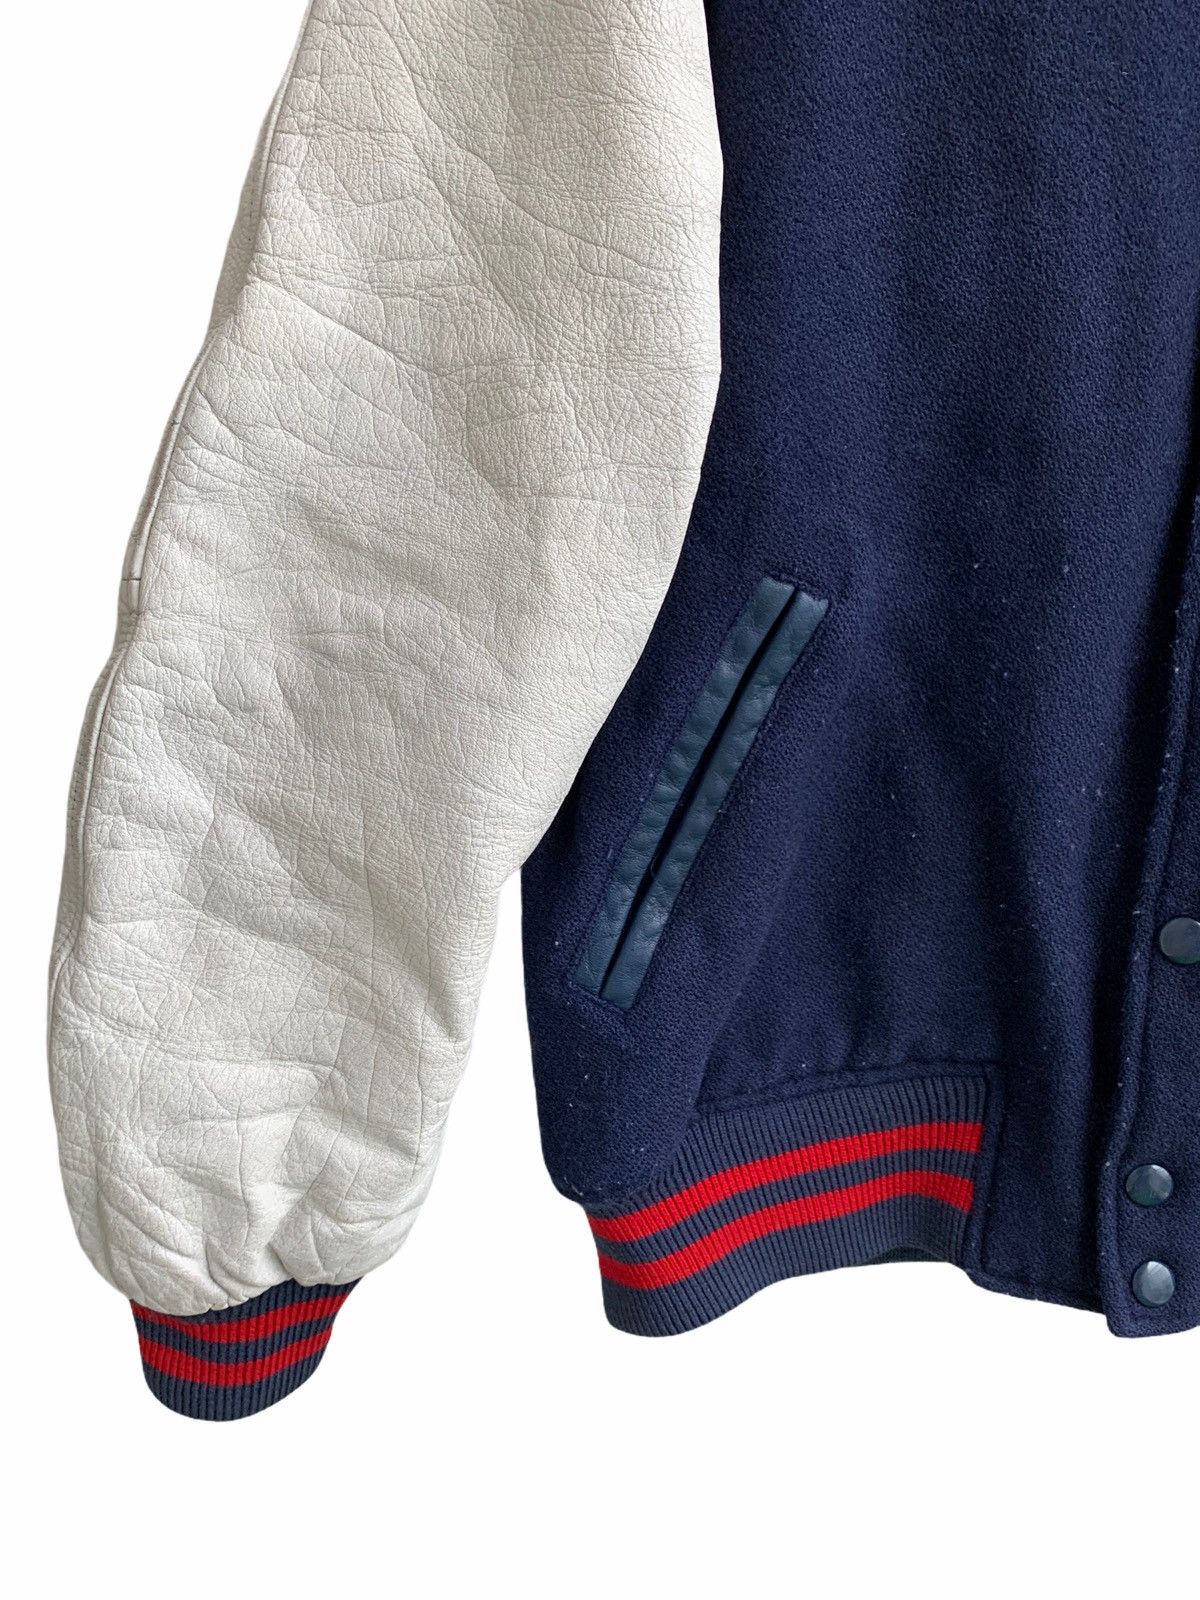 NBA Vintage Wool Varsity Leather Sleeves Jacket Size US S / EU 44-46 / 1 - 6 Thumbnail